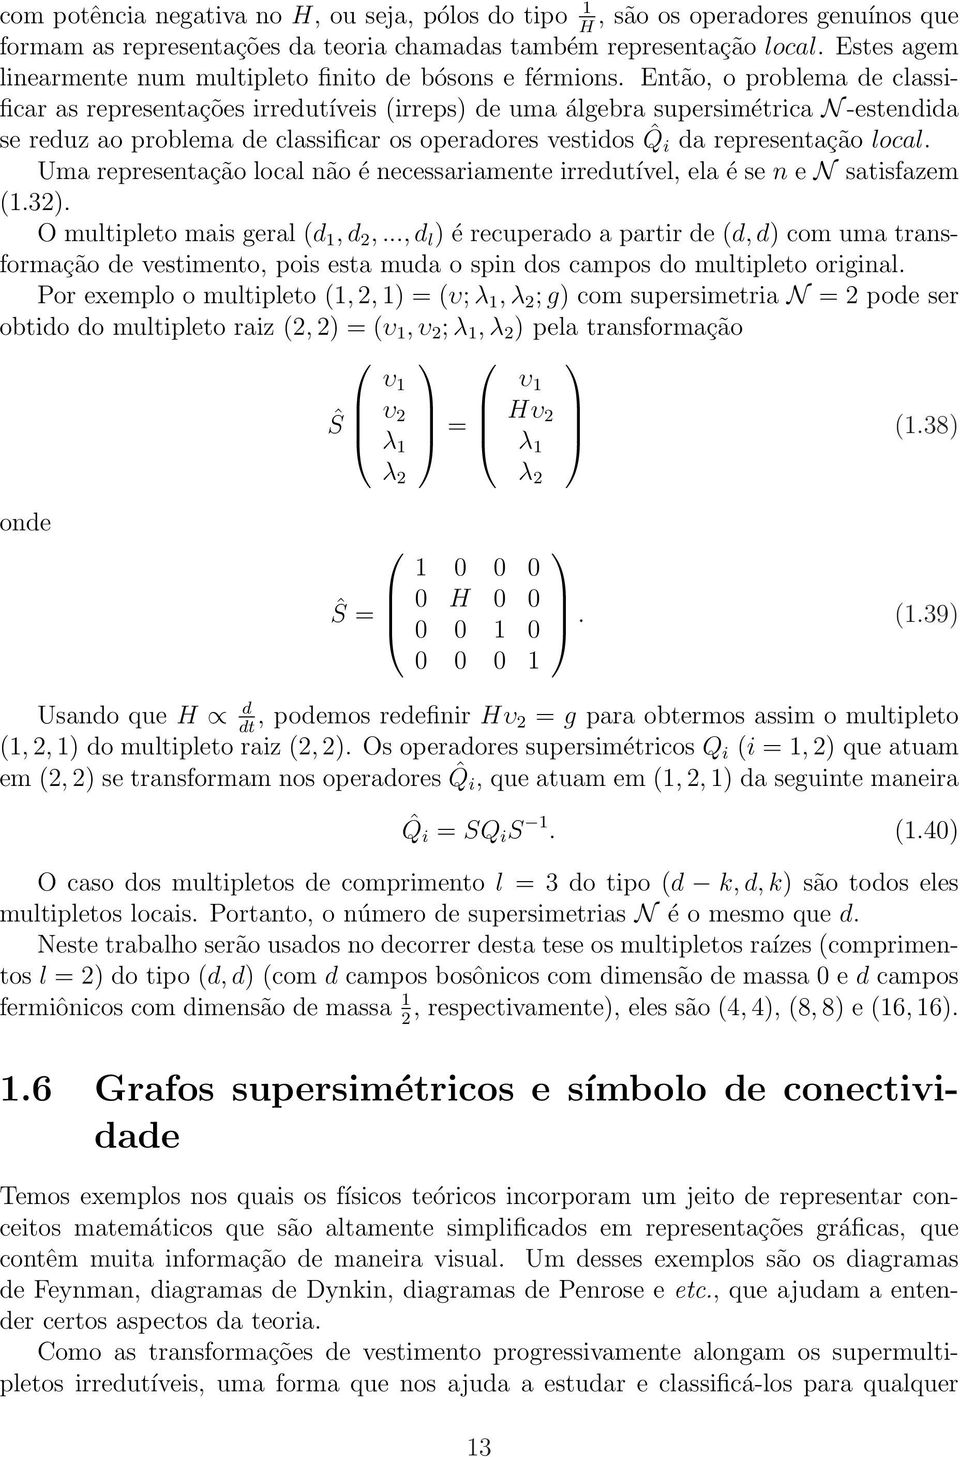 Então, o problema de classificar as representações irredutíveis (irreps) de uma álgebra supersimétrica N -estendida se reduz ao problema de classificar os operadores vestidos ˆQ i da representação